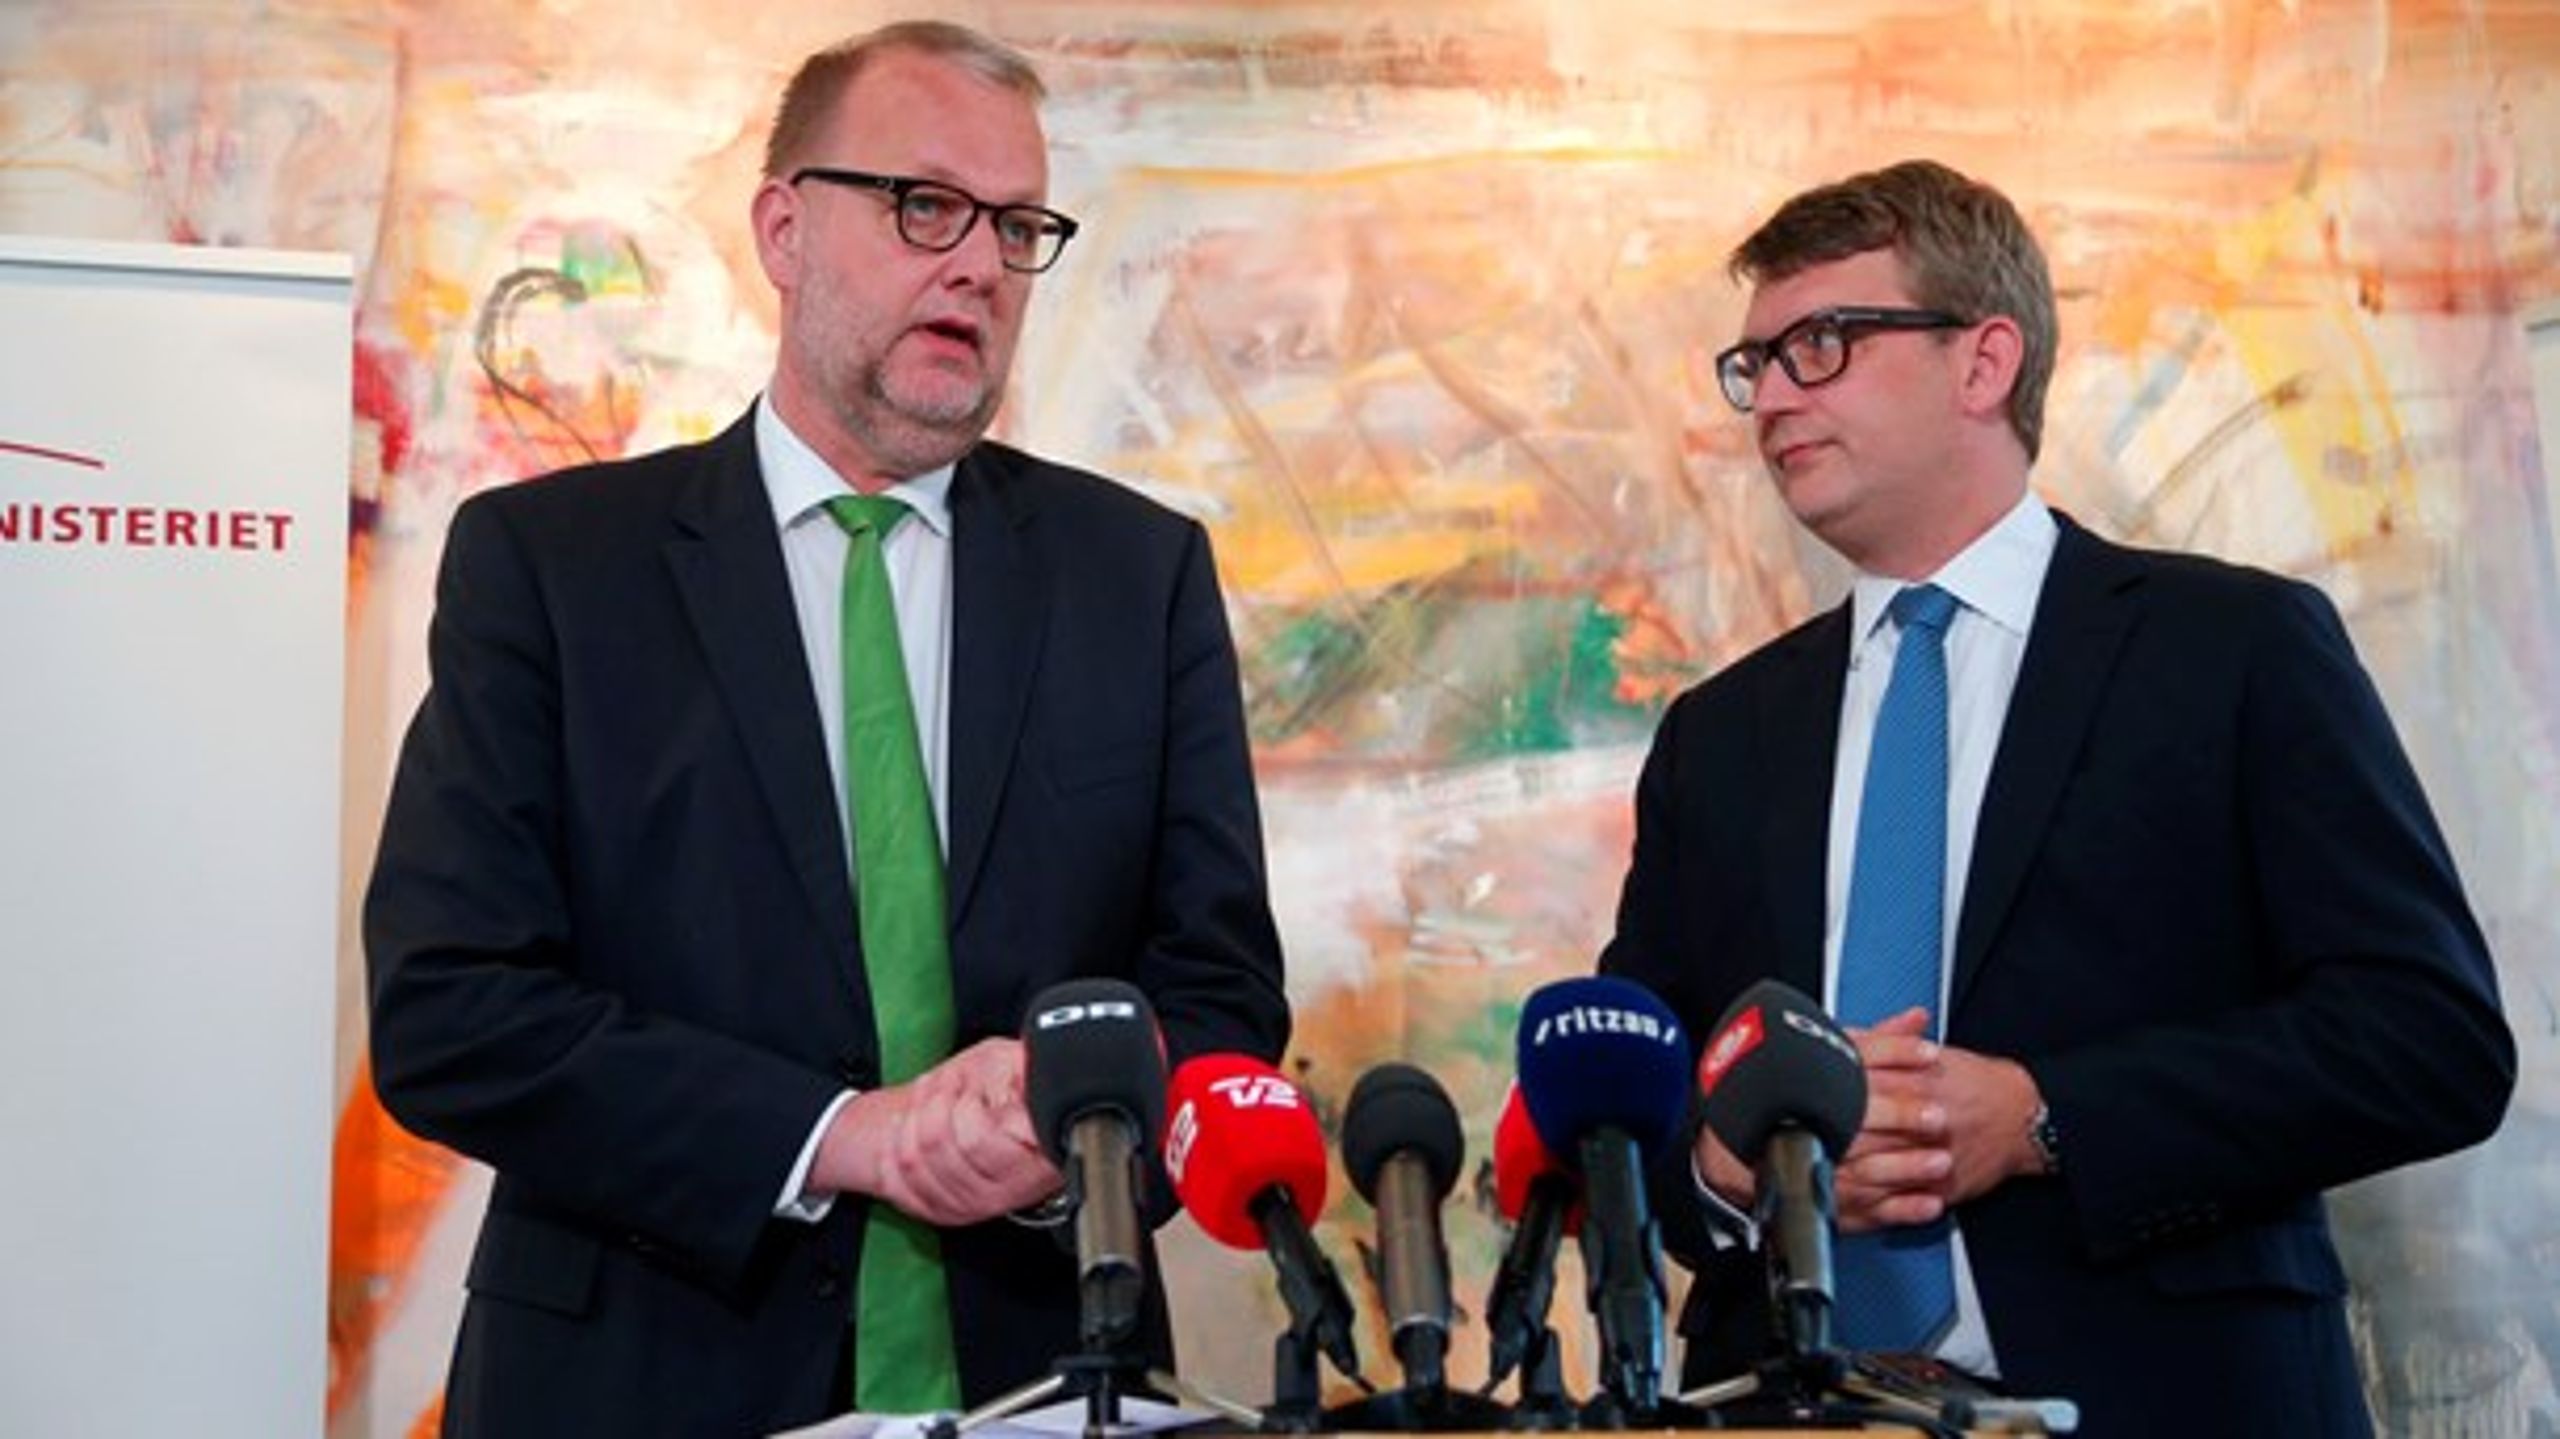 Energi-, forsynings- og klimaminister Lars Chr. Lilleholt (V) og erhvervs- og vækstminister Troels Lund Poulsen (V) fremlagde fredag regeringens bud på, hvordan det skal gøres billigere at være dansk energiforbruger.